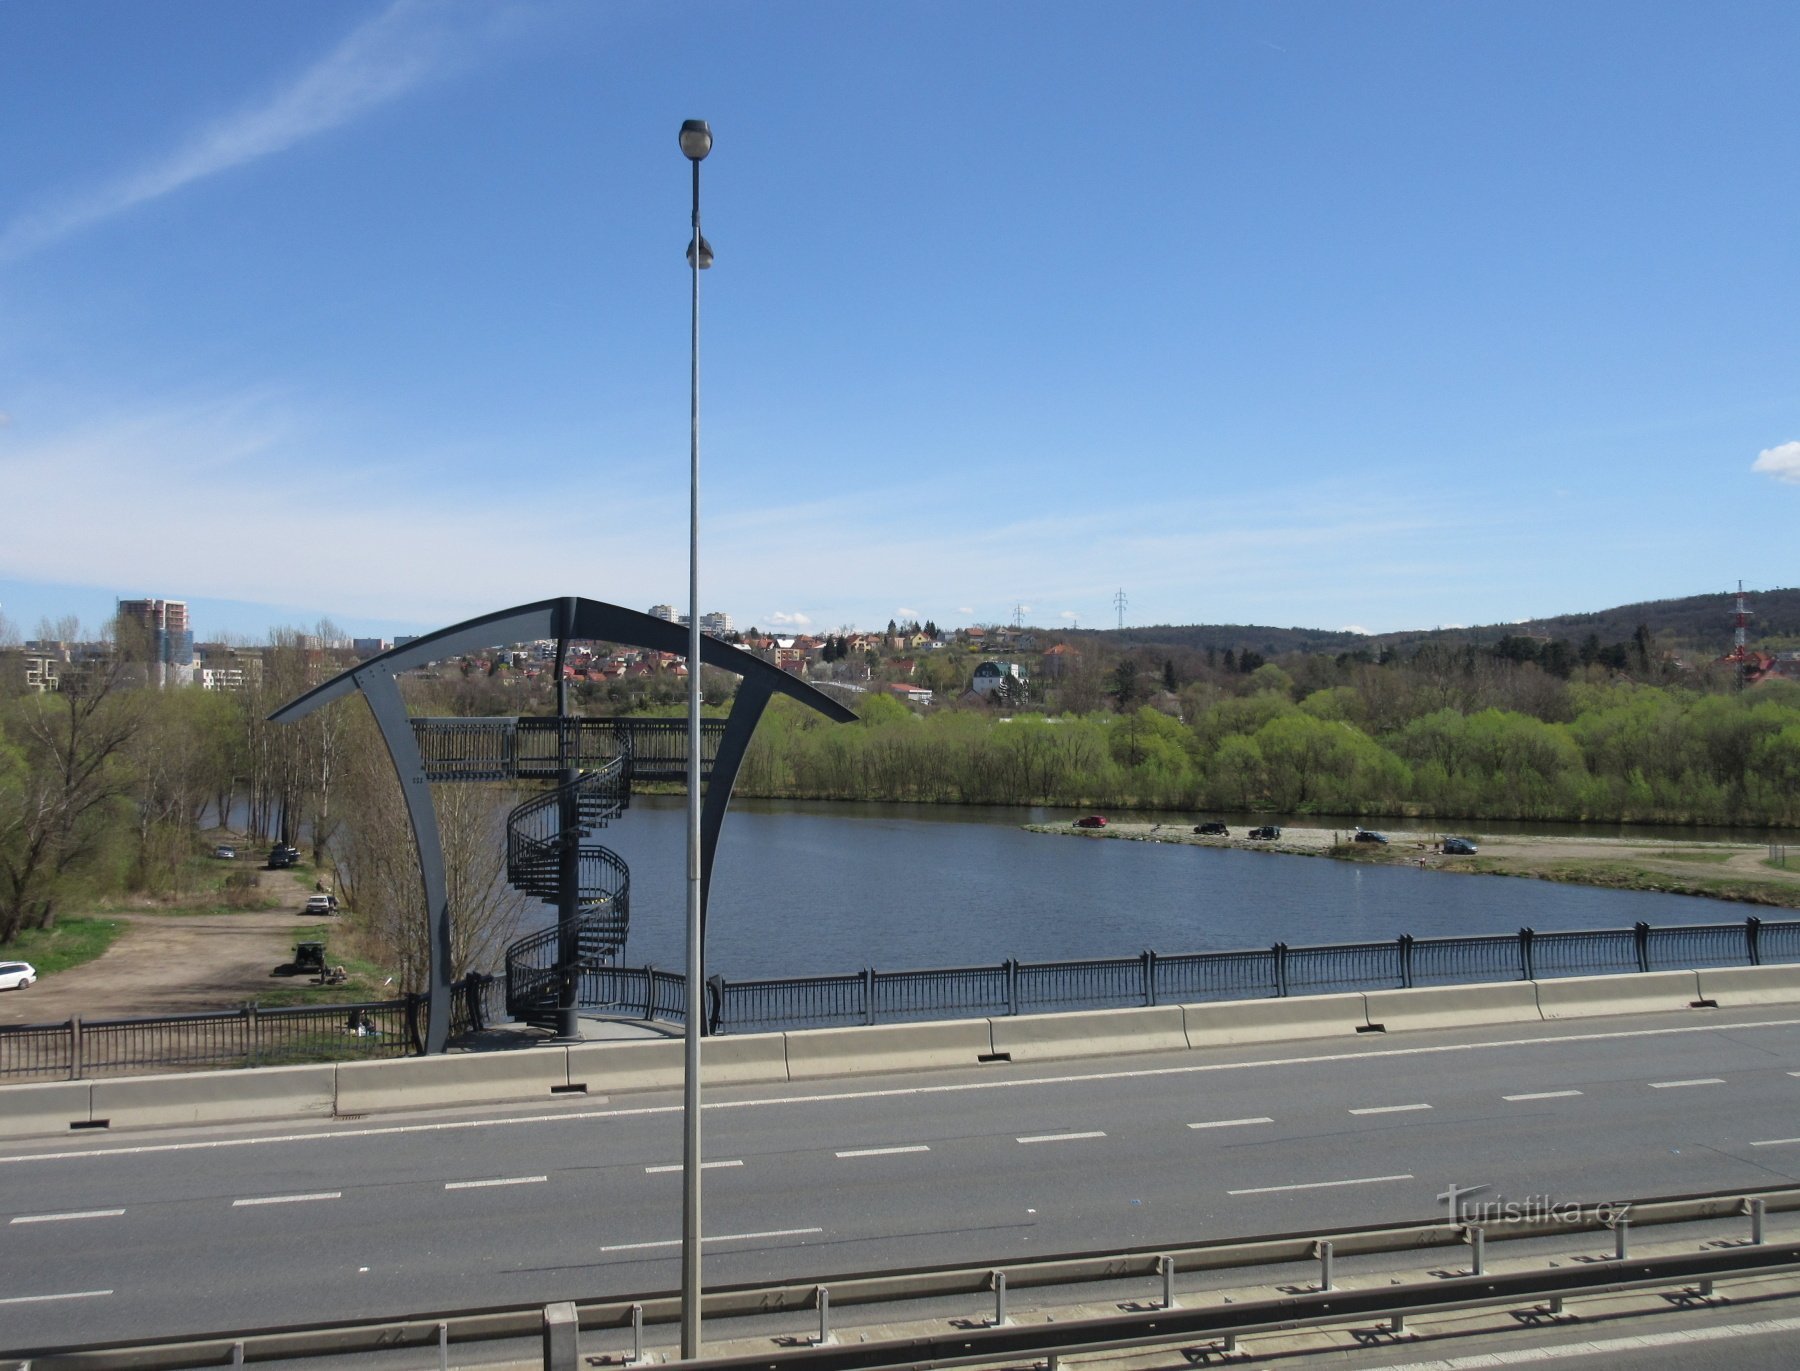 ラホヴィツェ - ラホヴィツェ橋の展望塔とベロンカ川とヴルタヴァ川の合流点